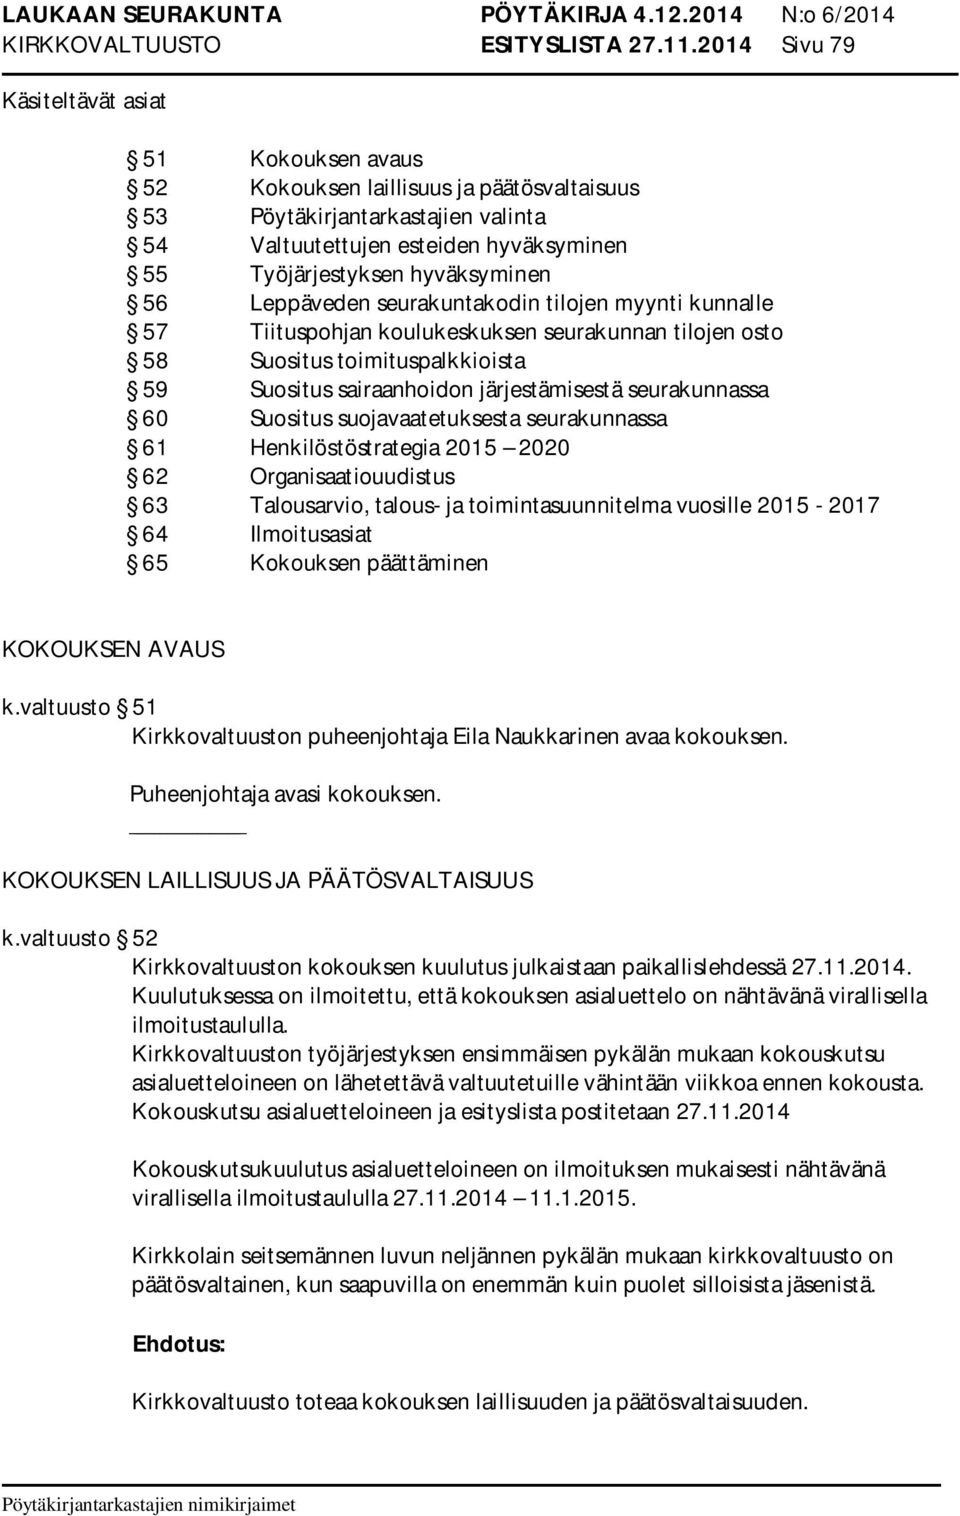 hyväksyminen 56 Leppäveden seurakuntakodin tilojen myynti kunnalle 57 Tiituspohjan koulukeskuksen seurakunnan tilojen osto 58 Suositus toimituspalkkioista 59 Suositus sairaanhoidon järjestämisestä